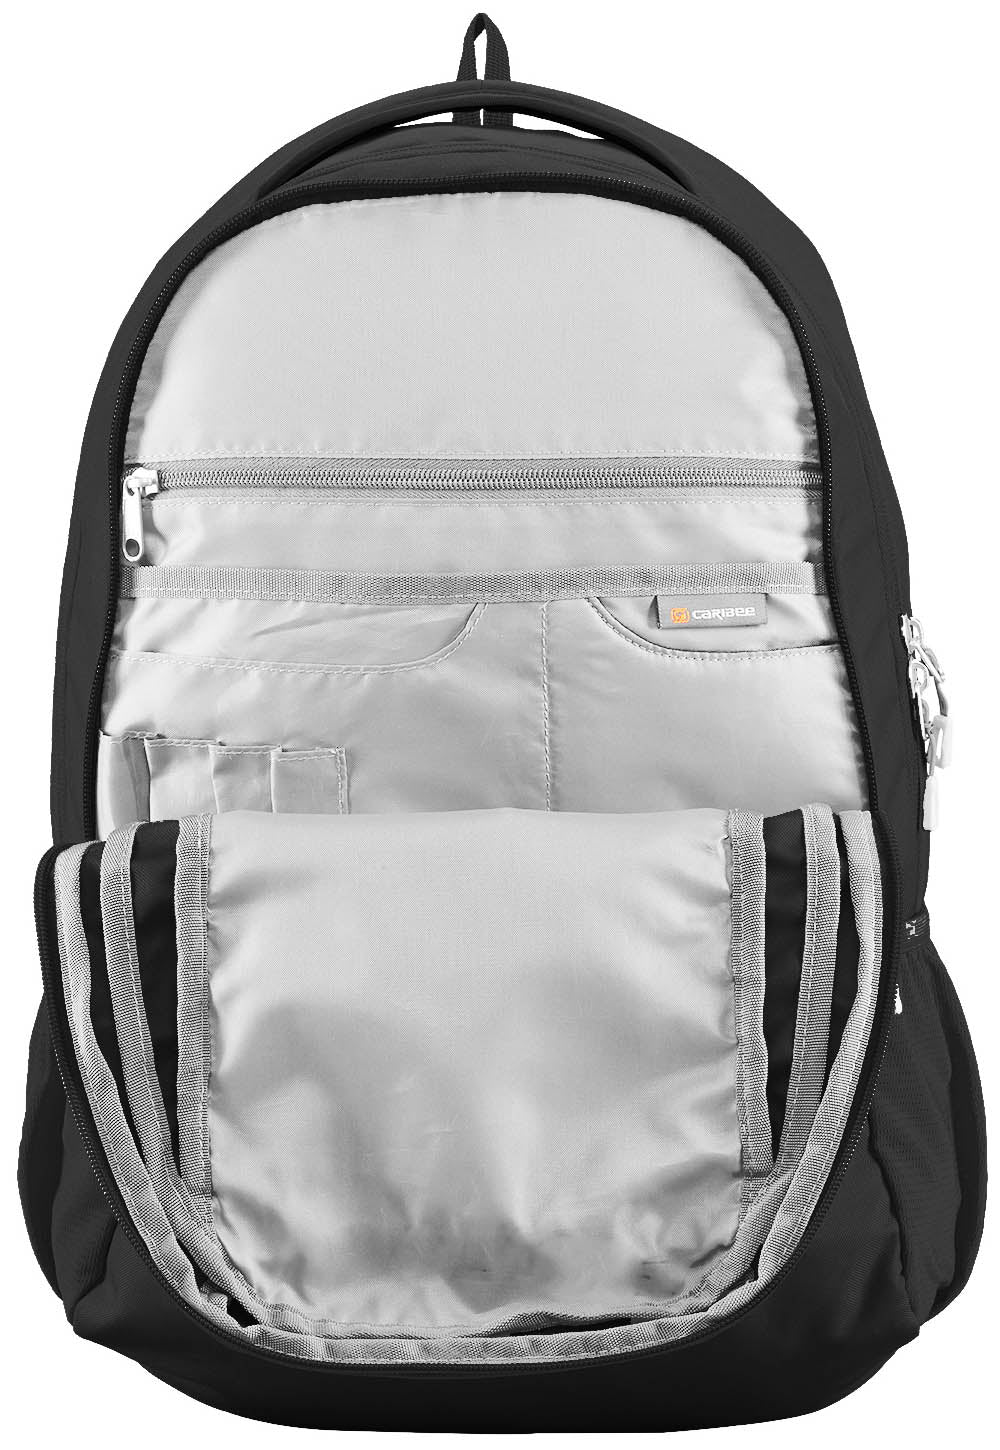 Caribee College 30L Backpack - Black